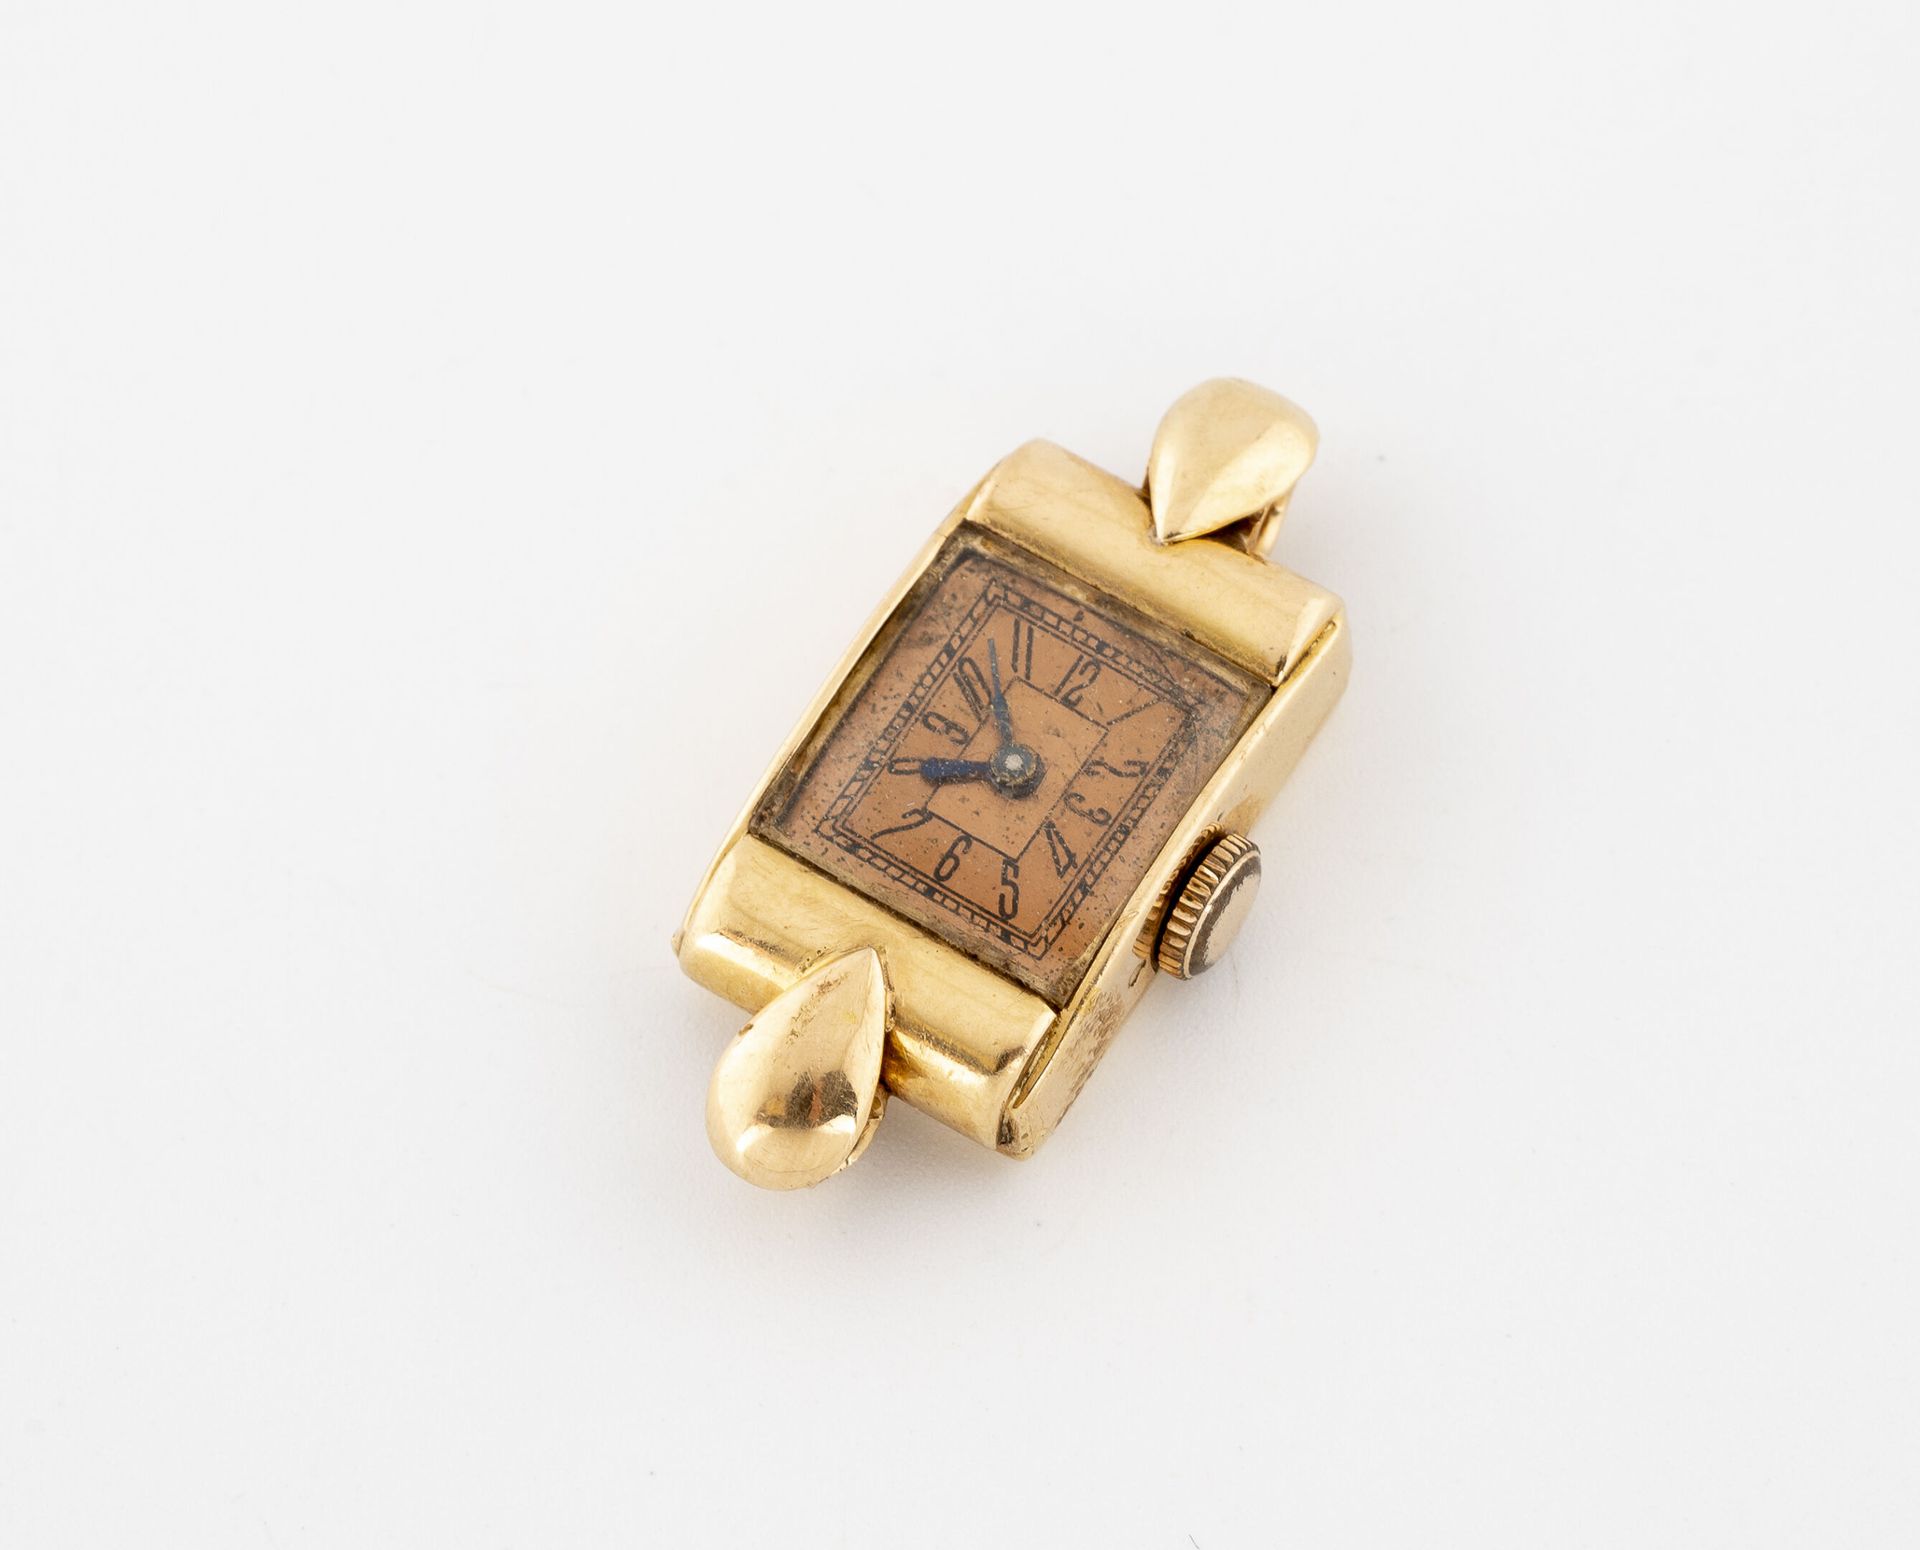 Null Rechteckiges Gehäuse einer Armbanduhr aus Gelbgold (750).

Zifferblatt mit &hellip;